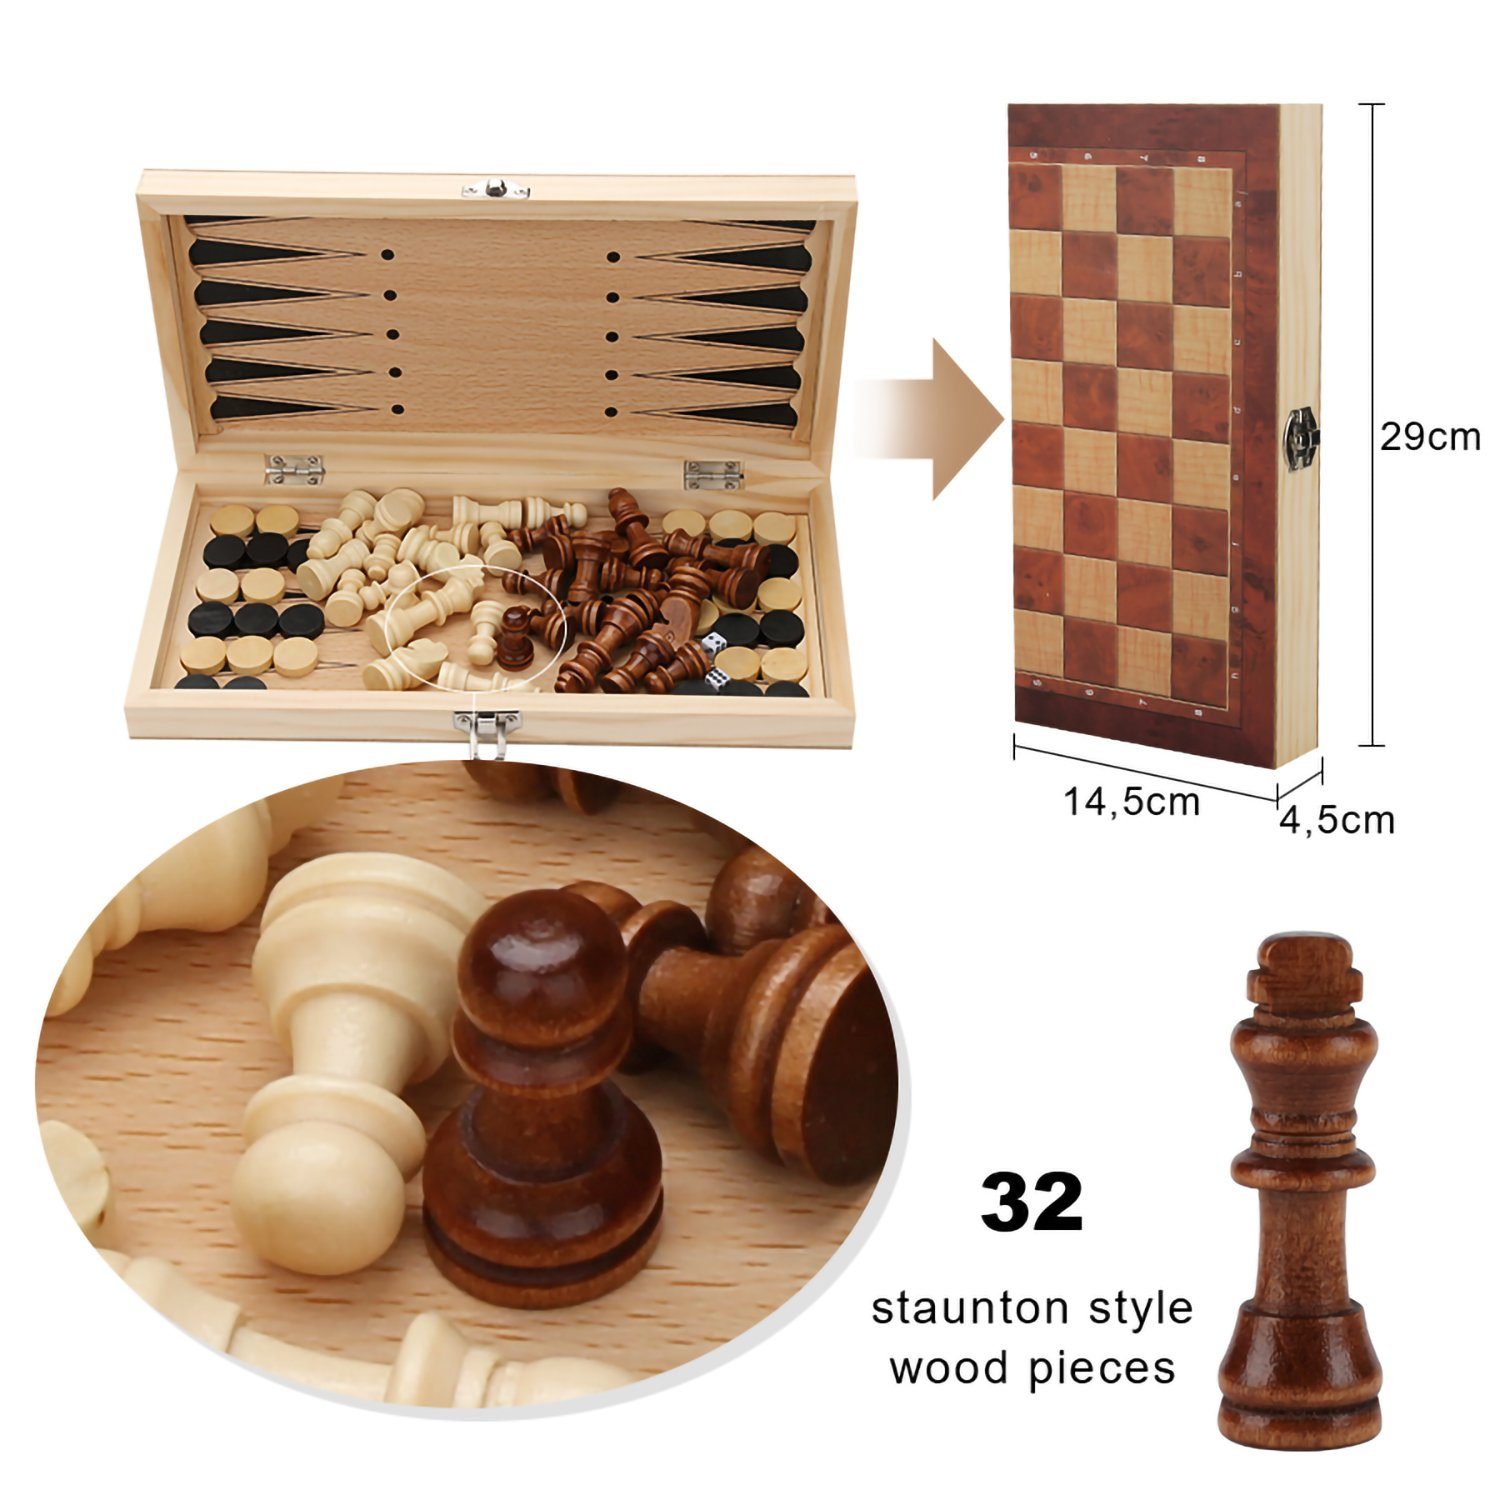 Handarbeit Schach 29x29CM 3 Lospitch in1 Schachspiel Spiel Backgammon Spiel, Schach